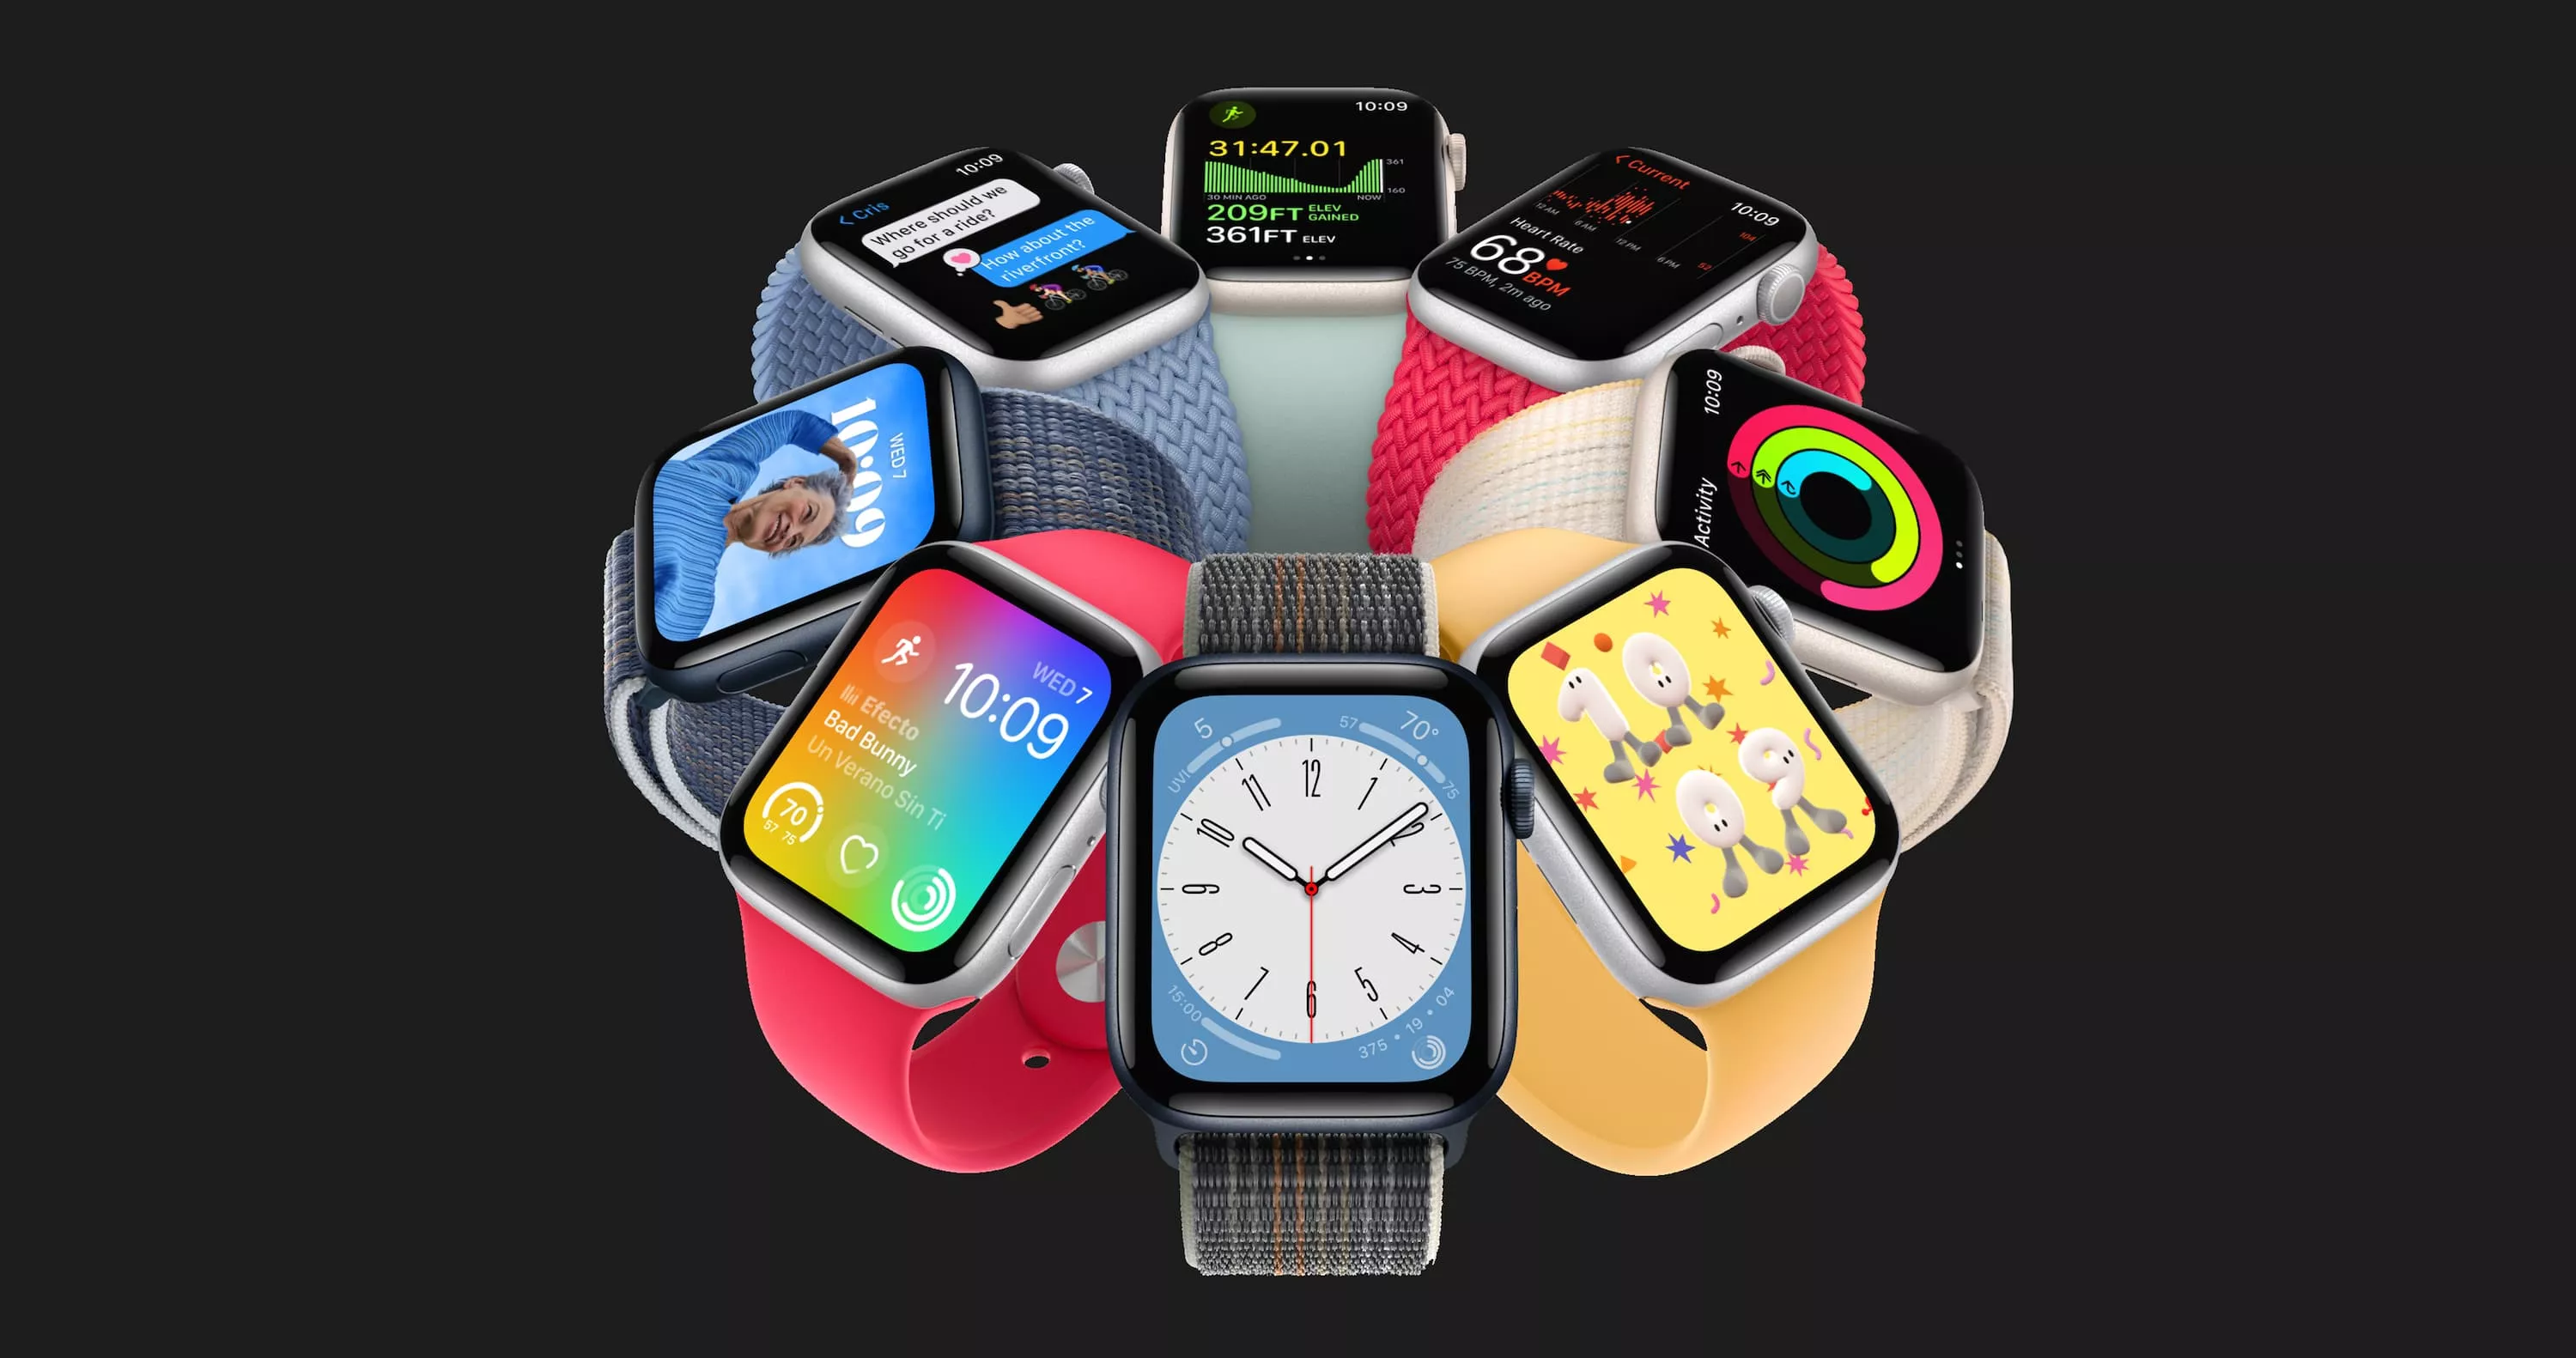 Apple Watch SE 2 44mm, GPS, Alumínio Starlight, Pulseira Esportiva  Starlight - Detona Shop